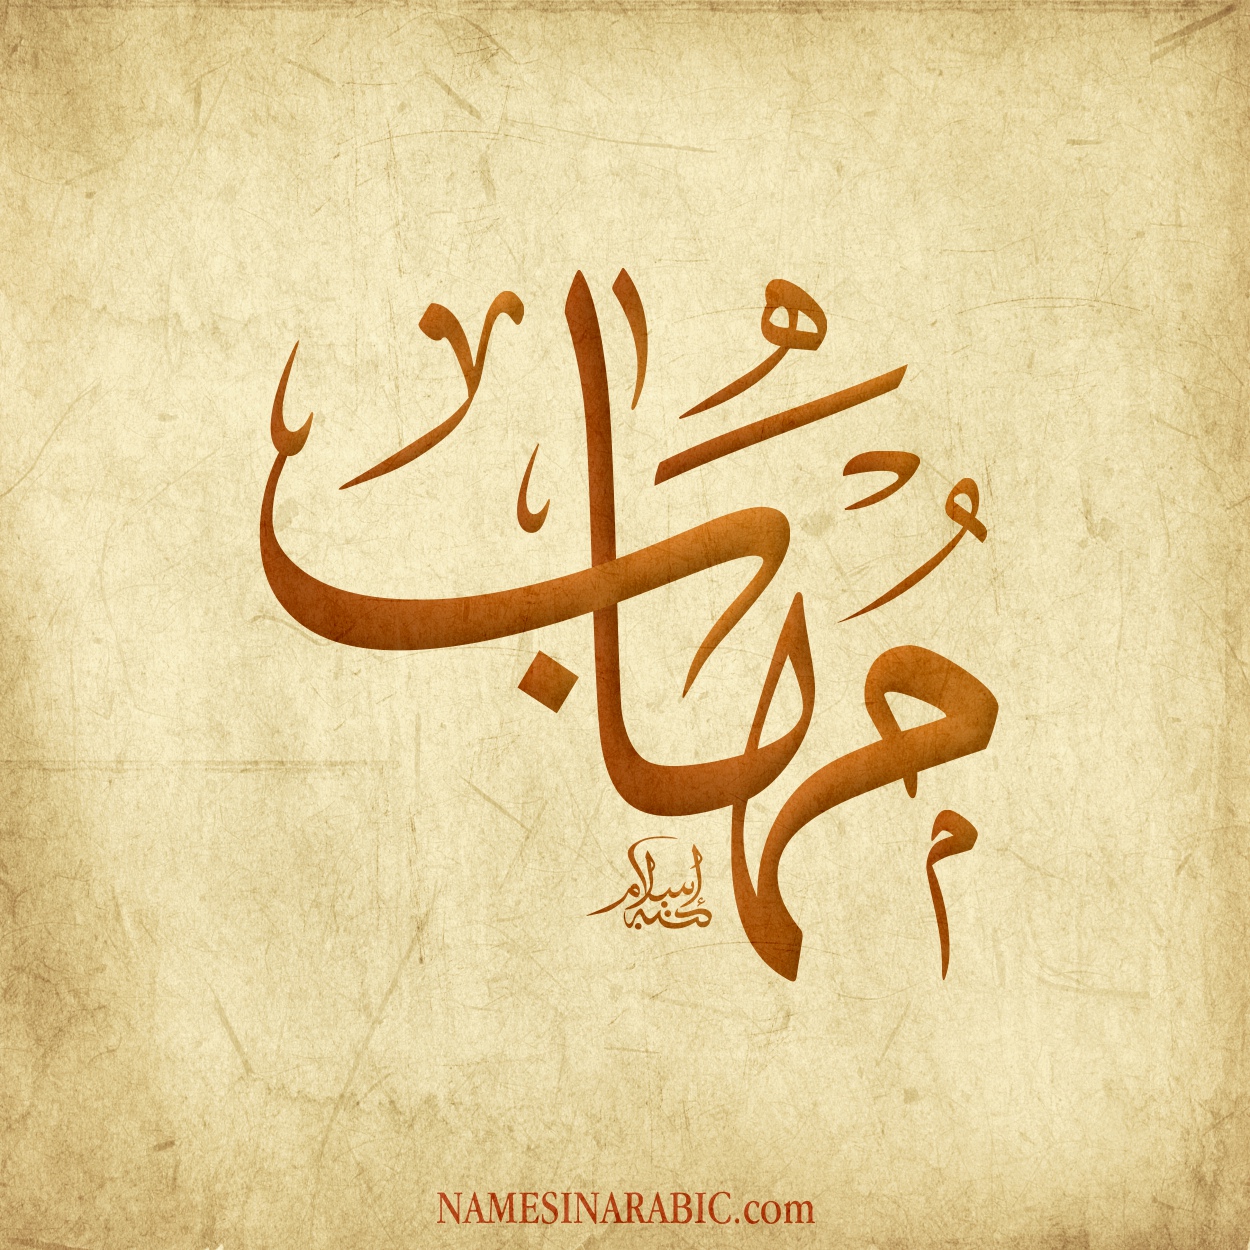 صورة اسم مُهاب MOHAB اسم مُهاب بالخط العربي من موقع الأسماء بالخط العربي بريشة الفنان إسلام ابن الفضل